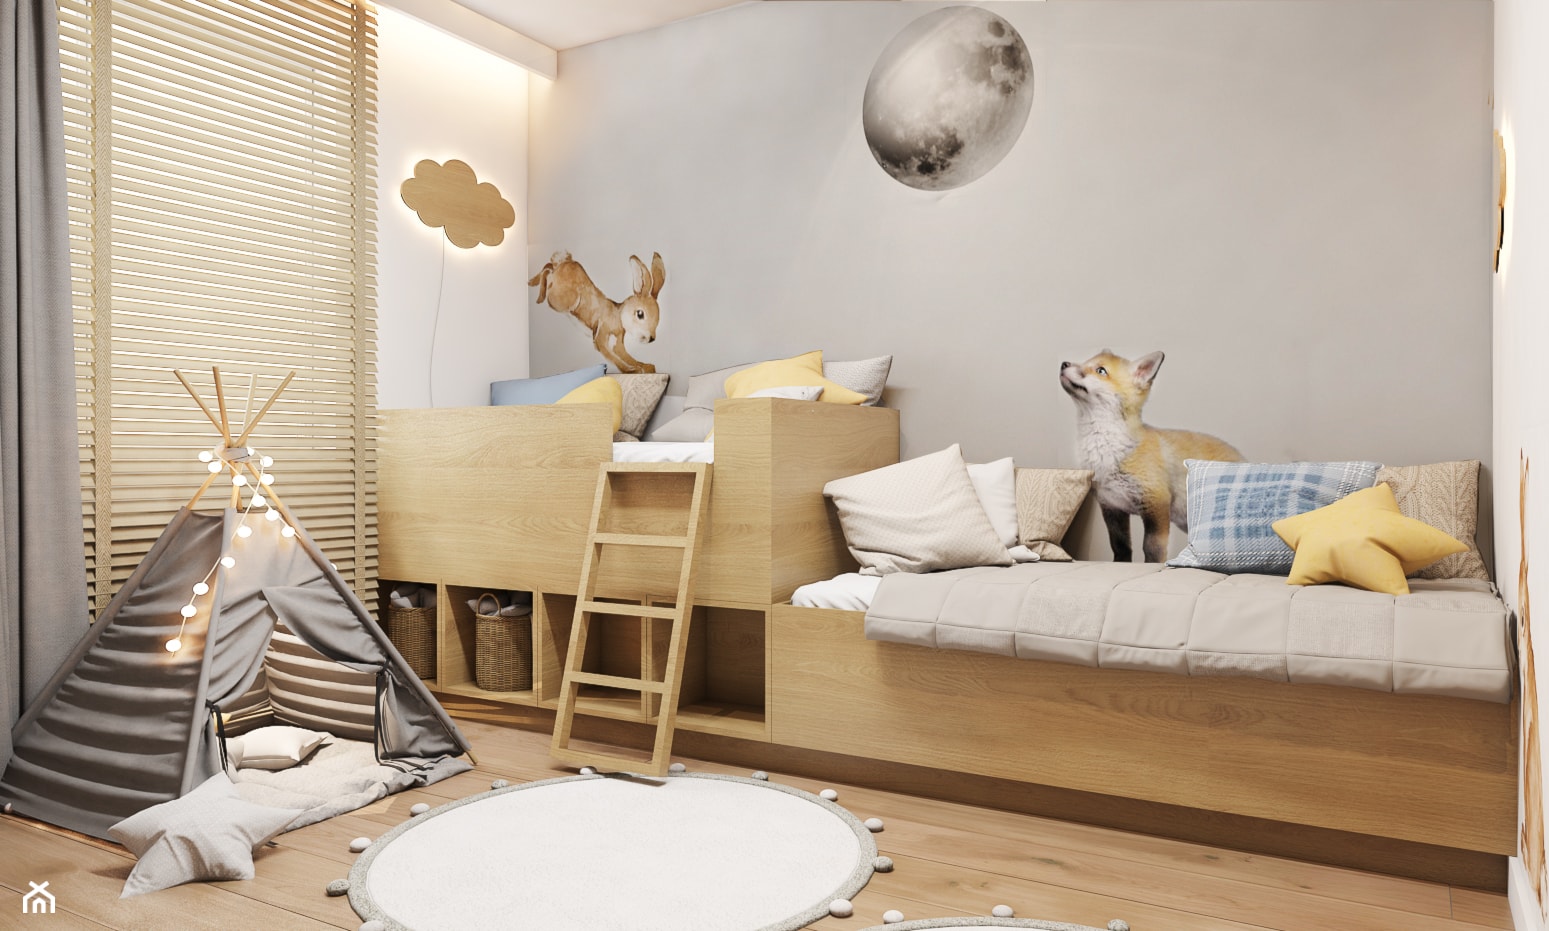 Nowoczesne przestrzenie z niebieskimi akcentami i wstawkami z drewna - Pokój dziecka, styl nowoczes ... - zdjęcie od Idea by Mag. - Homebook